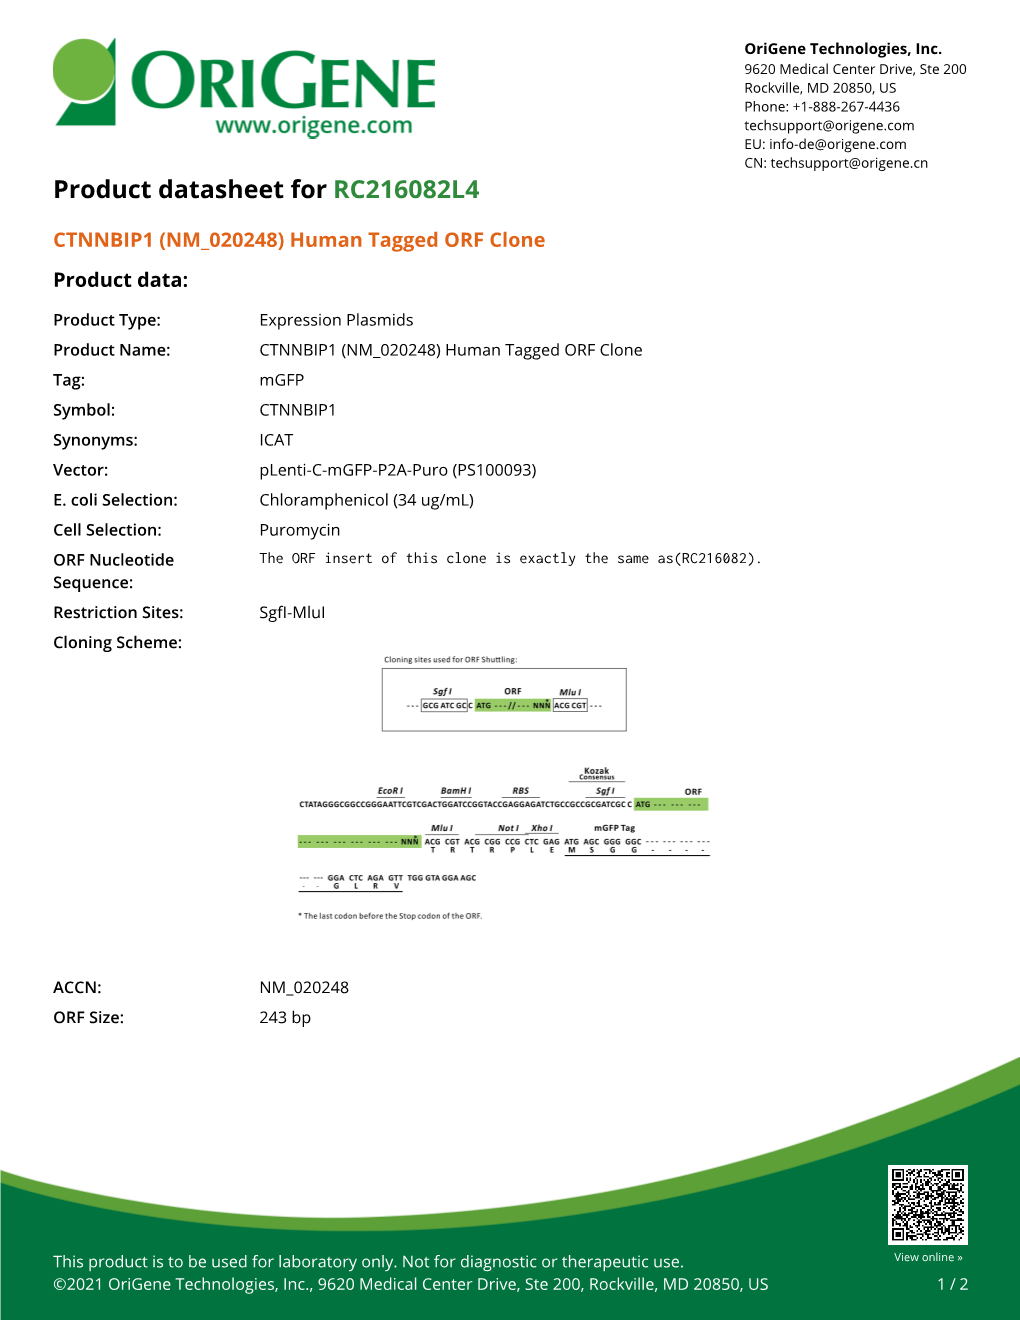 CTNNBIP1 (NM 020248) Human Tagged ORF Clone – RC216082L4 | Origene